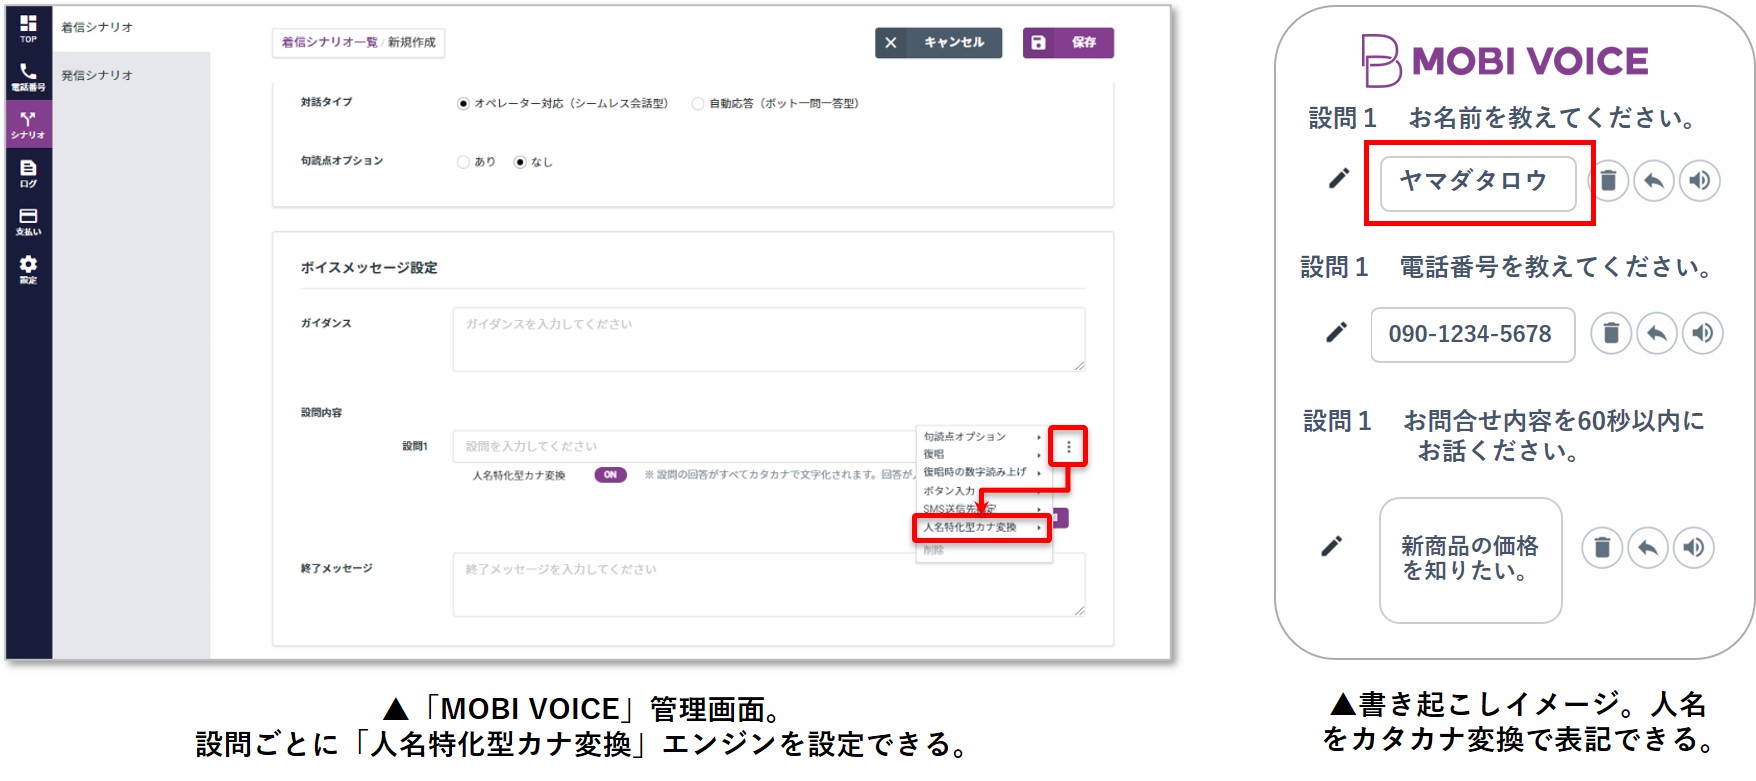 モビルスのai電話自動応答システム Mobi Voice がamivoice Cloud Platformの音声認識apiを採用 人名をカタカナに自動 変換 株式会社アドバンスト メディアのプレスリリース